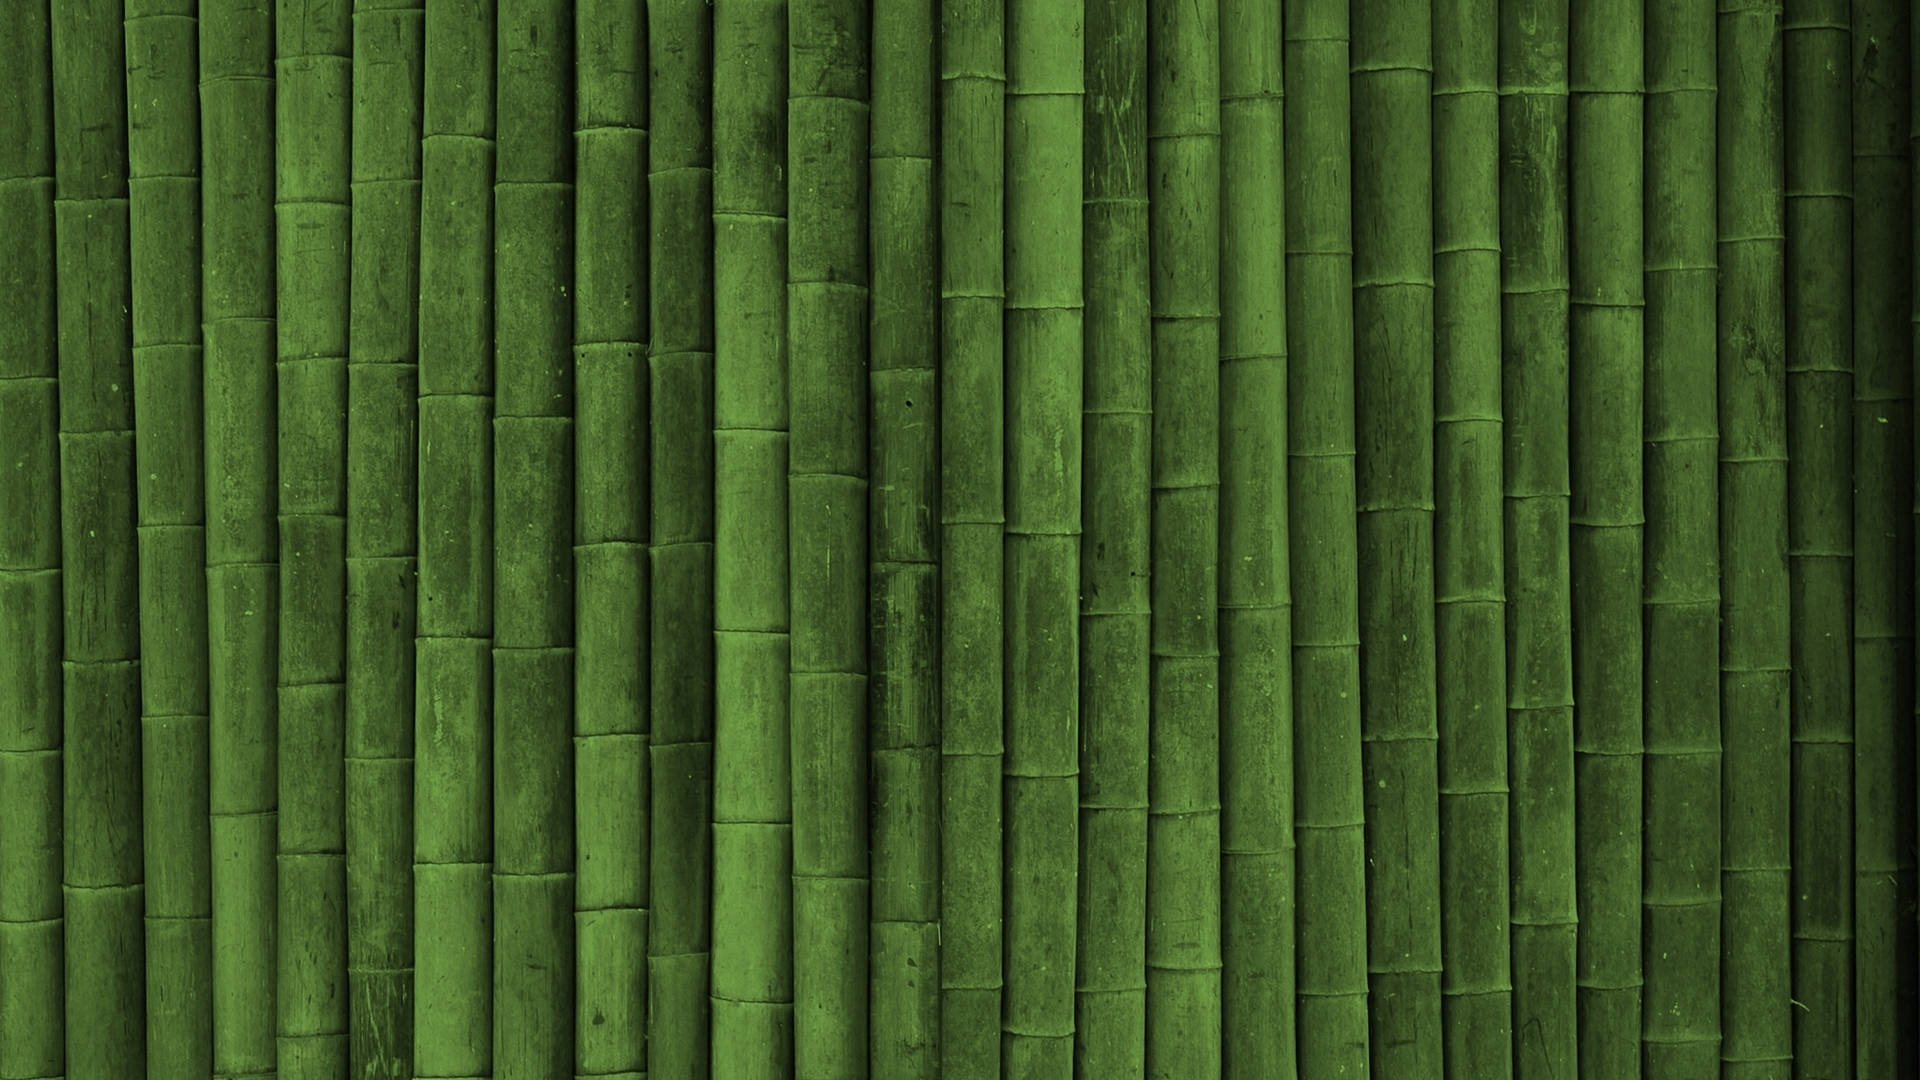 Minimalist Bamboo Hd Background